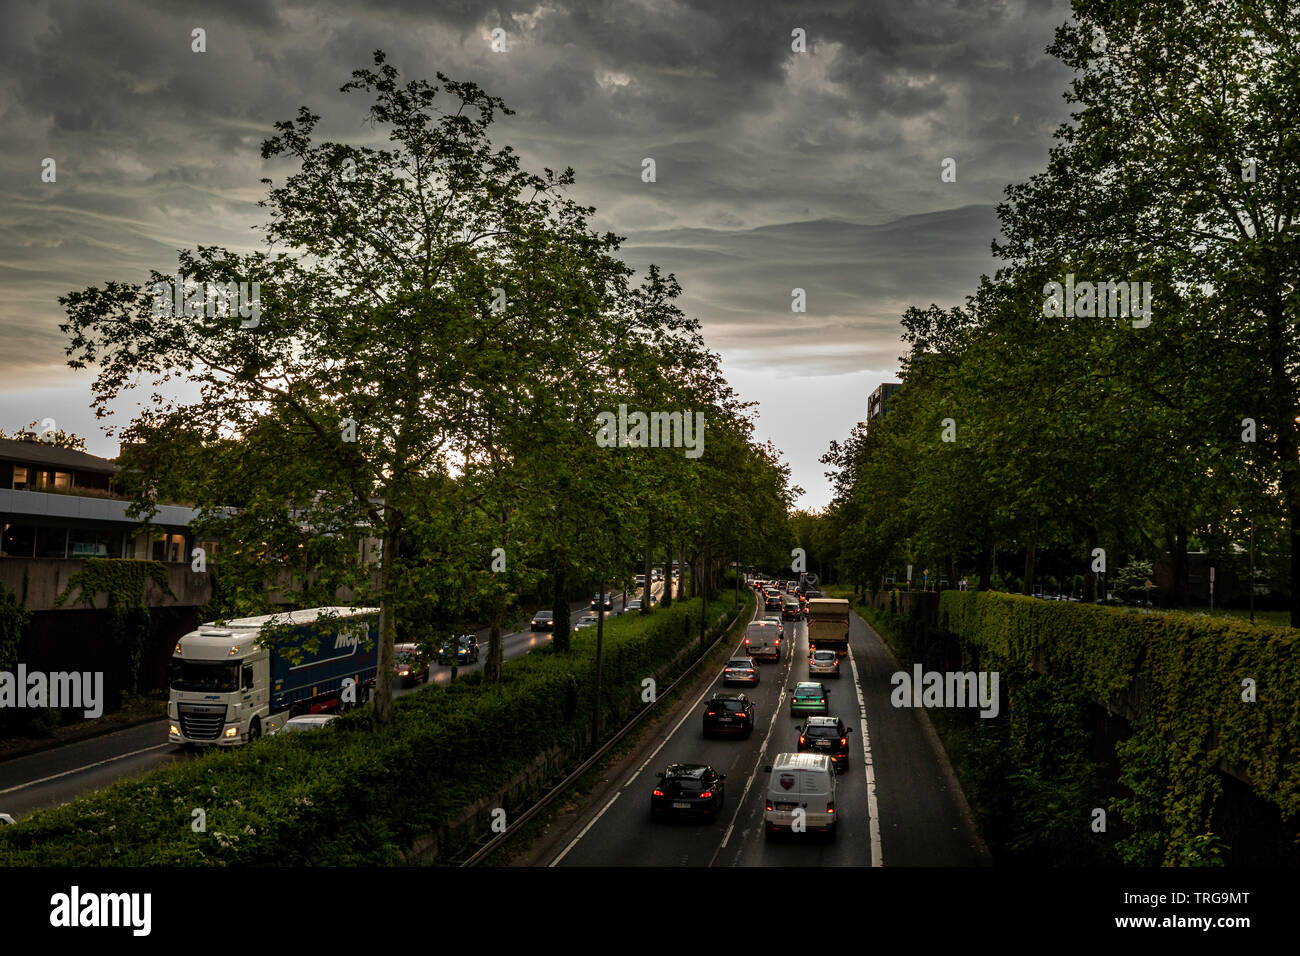 Views of the flowing traffic under dramatic sky on the Bundesstrasse 1 in Dortmund © Frank Schultze / Zeitenspiegel Stock Photo